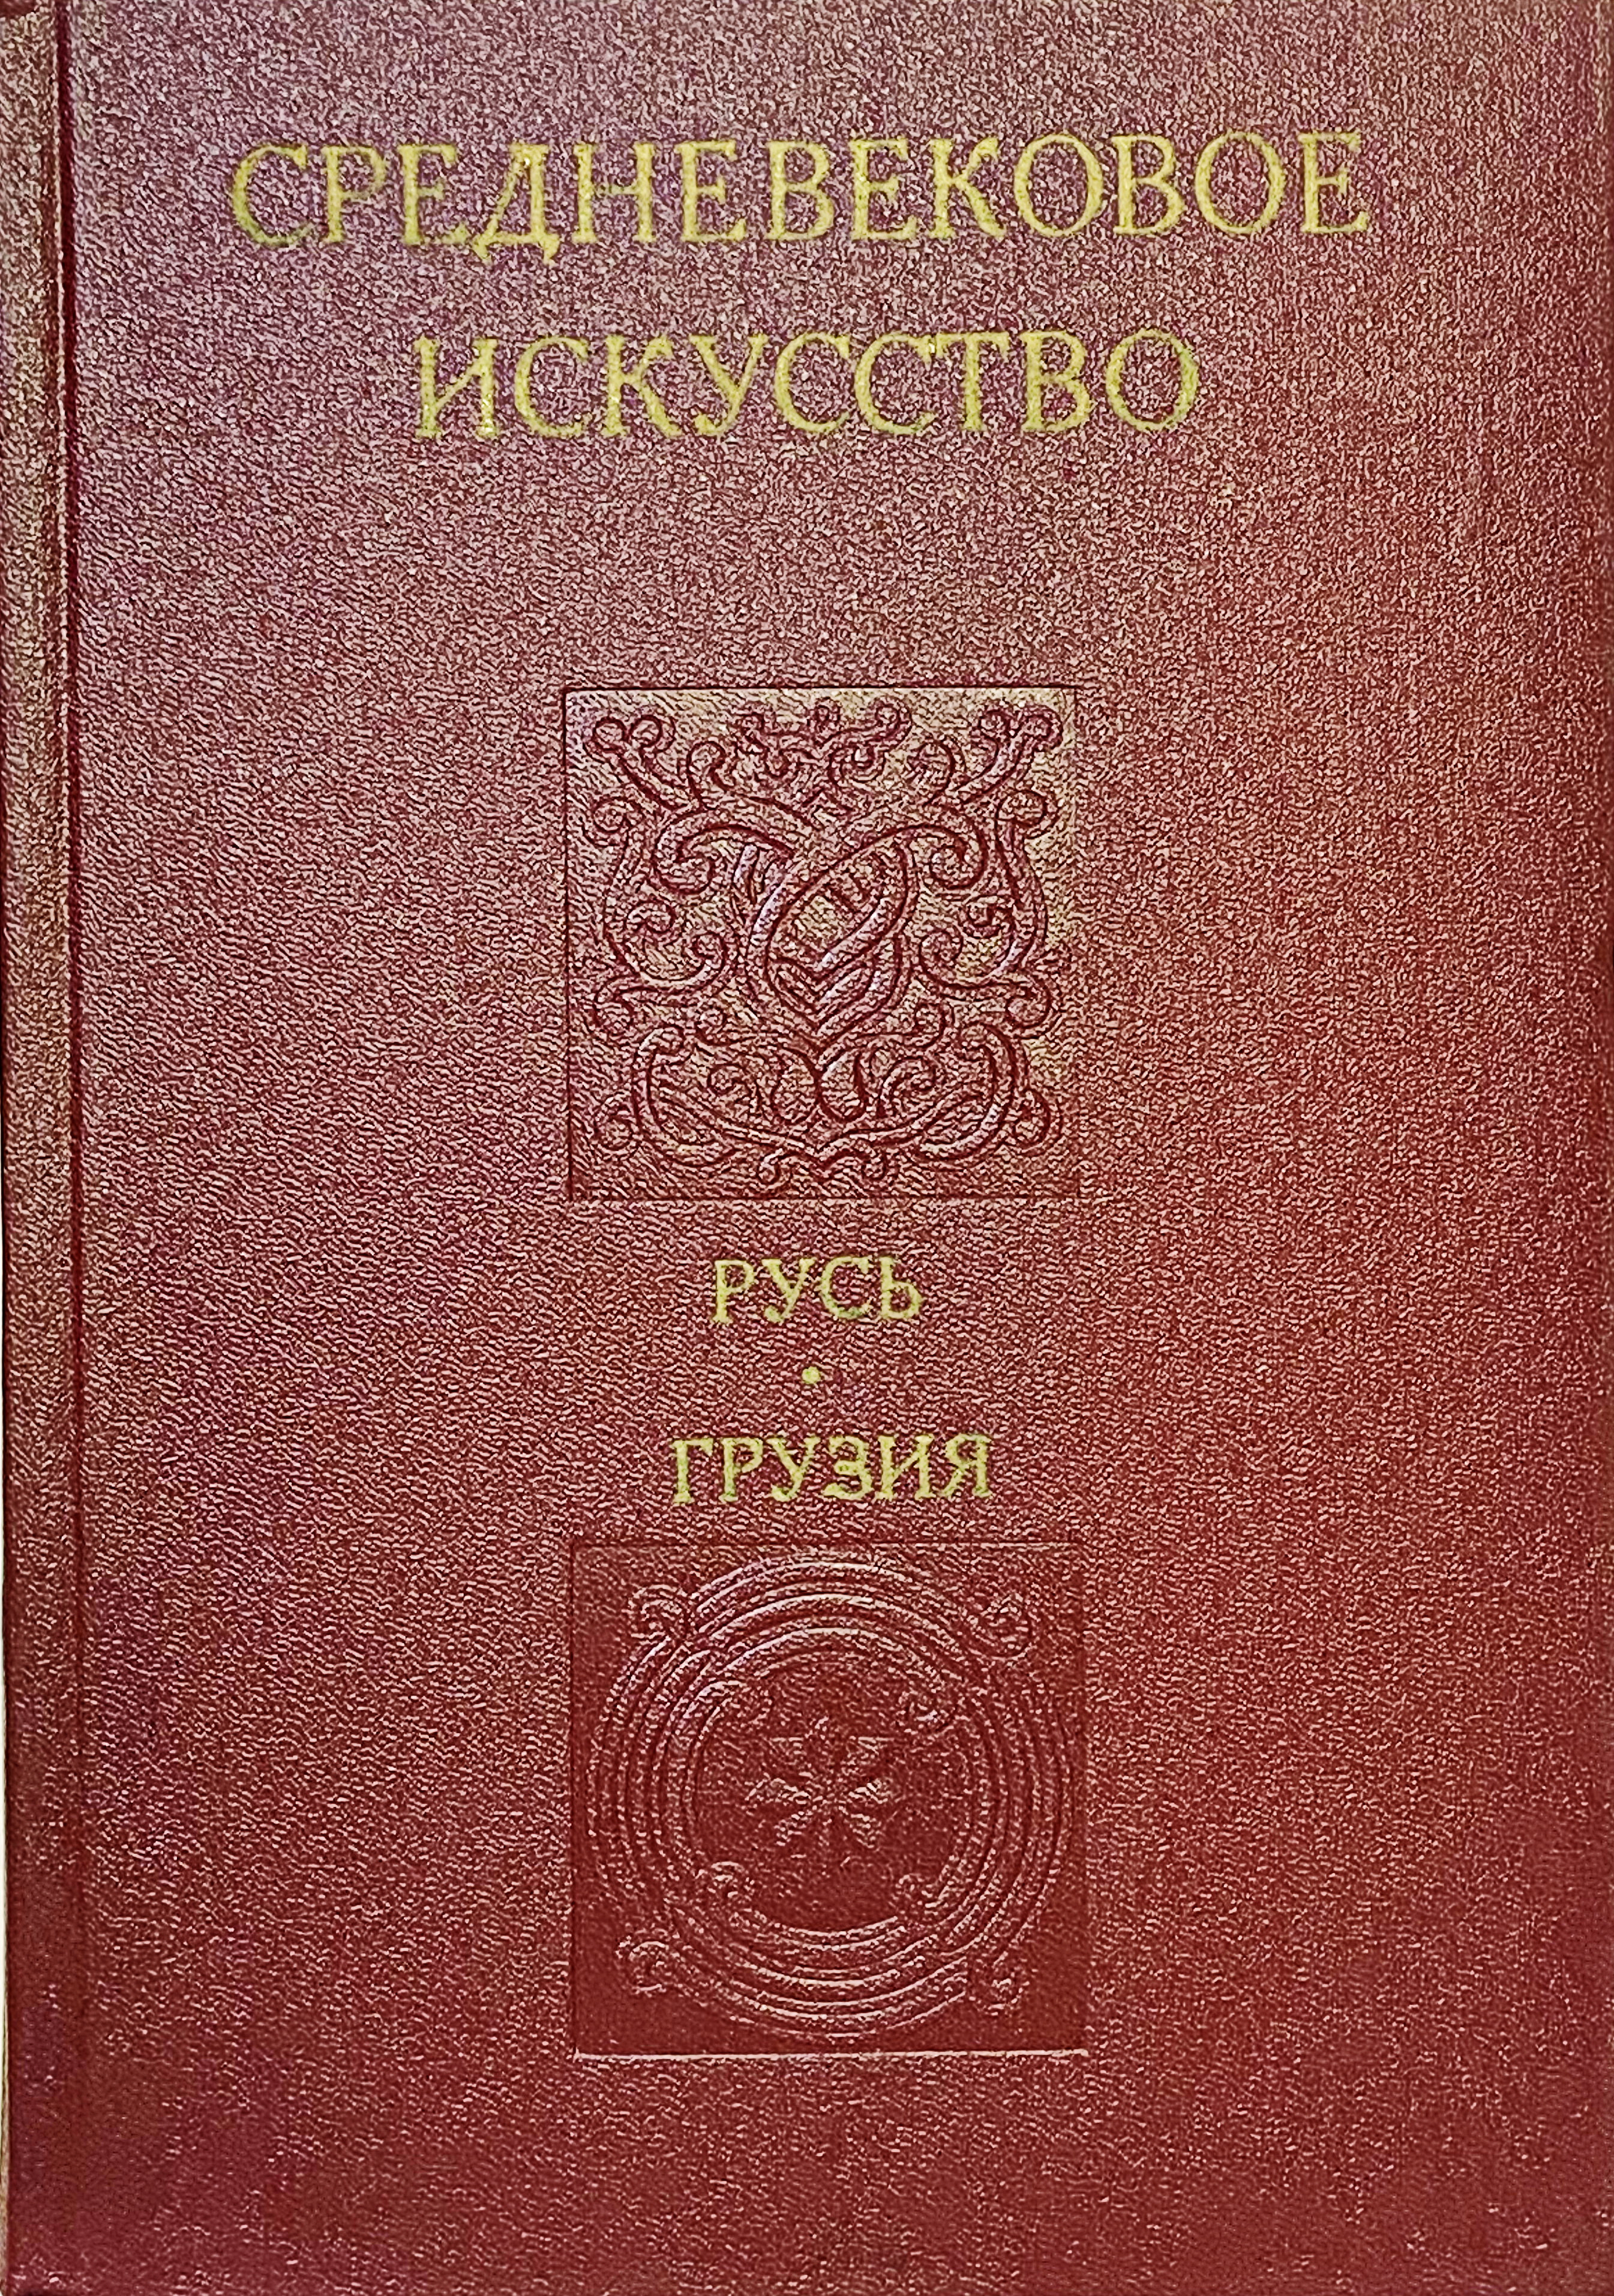 Средневековое искусство. Русь. Грузия - фото